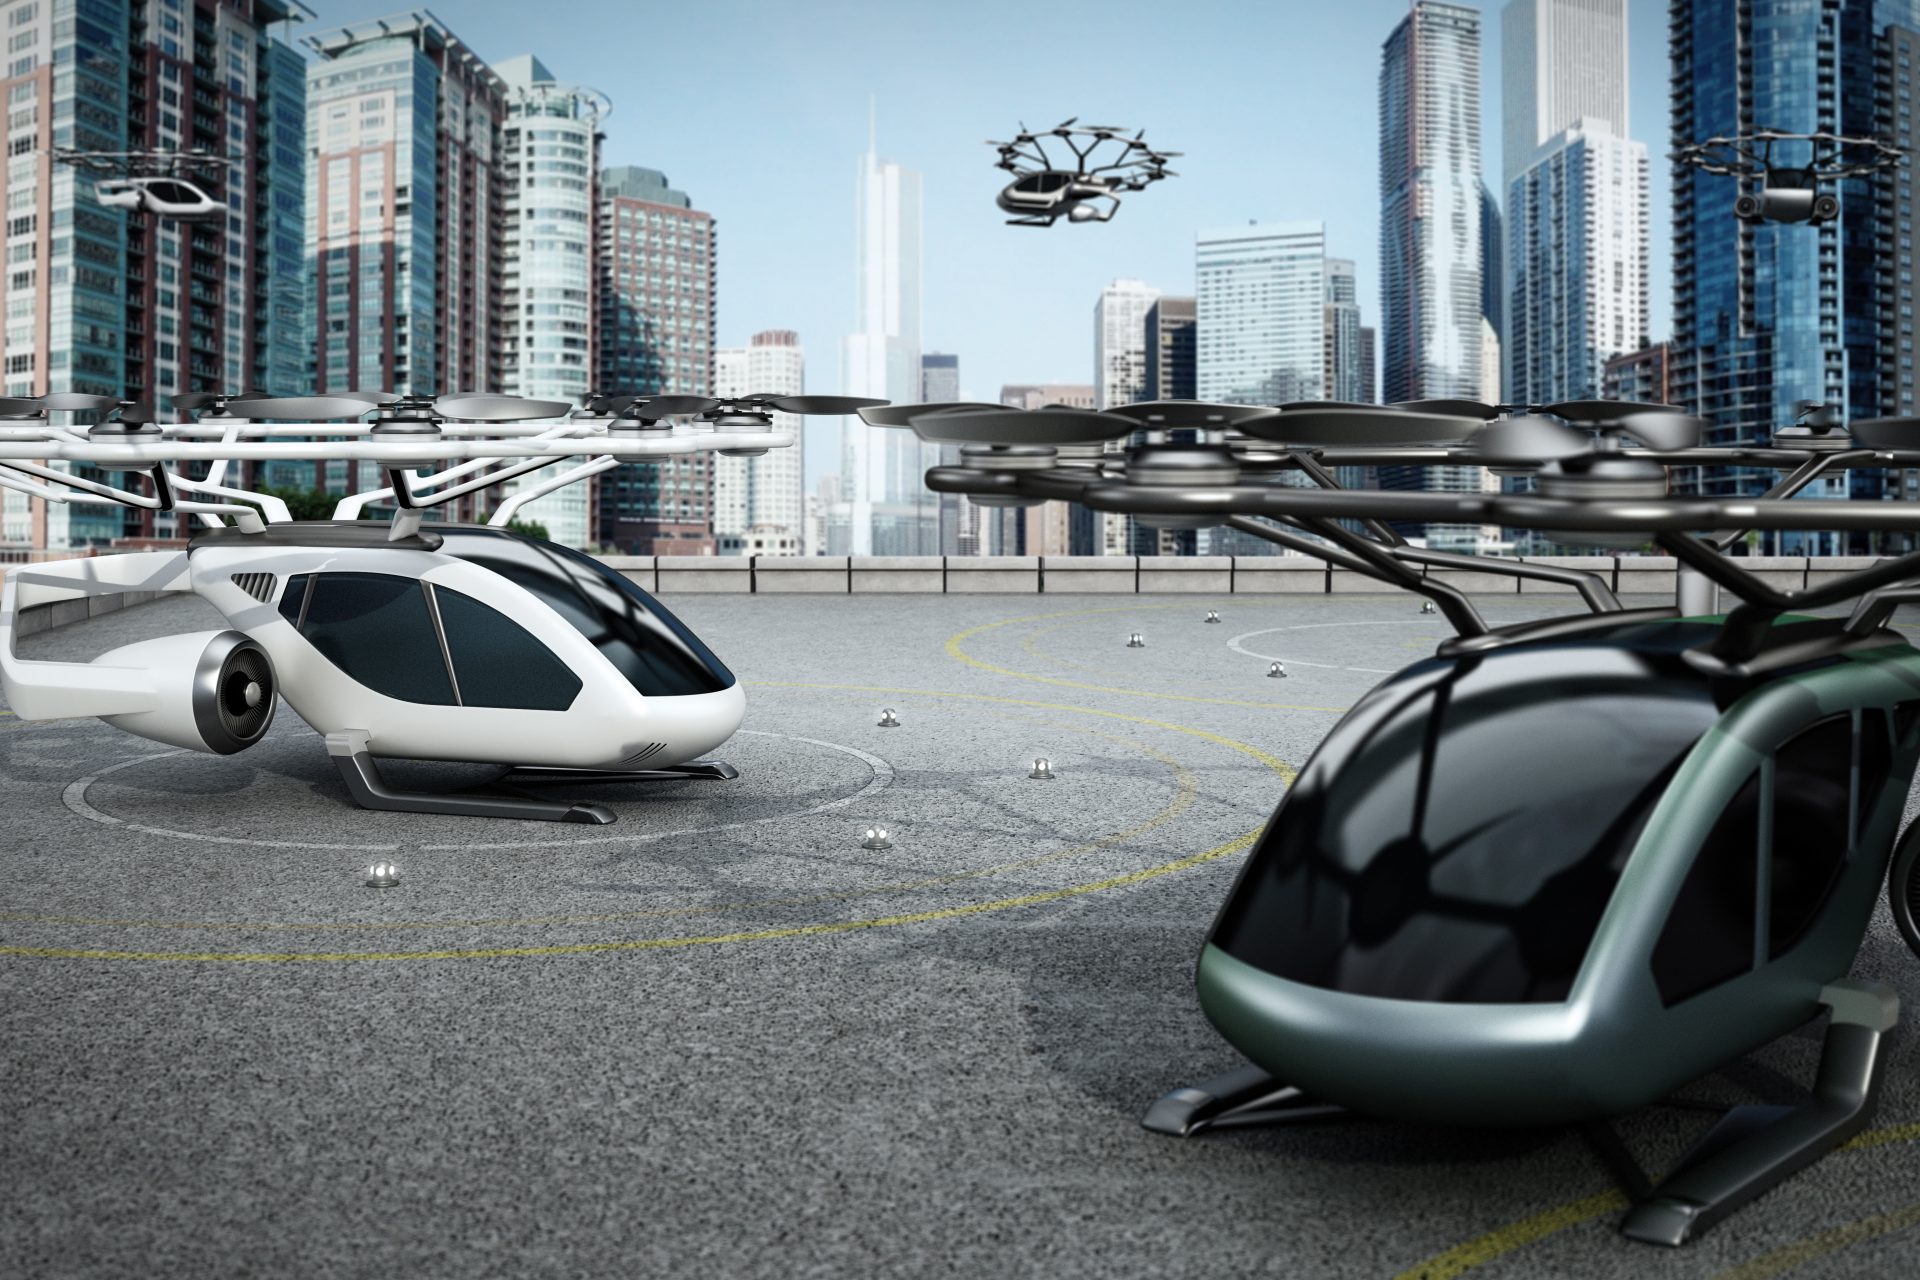 空飛ぶタクシー「eVTOL」2025年にも実用化へ